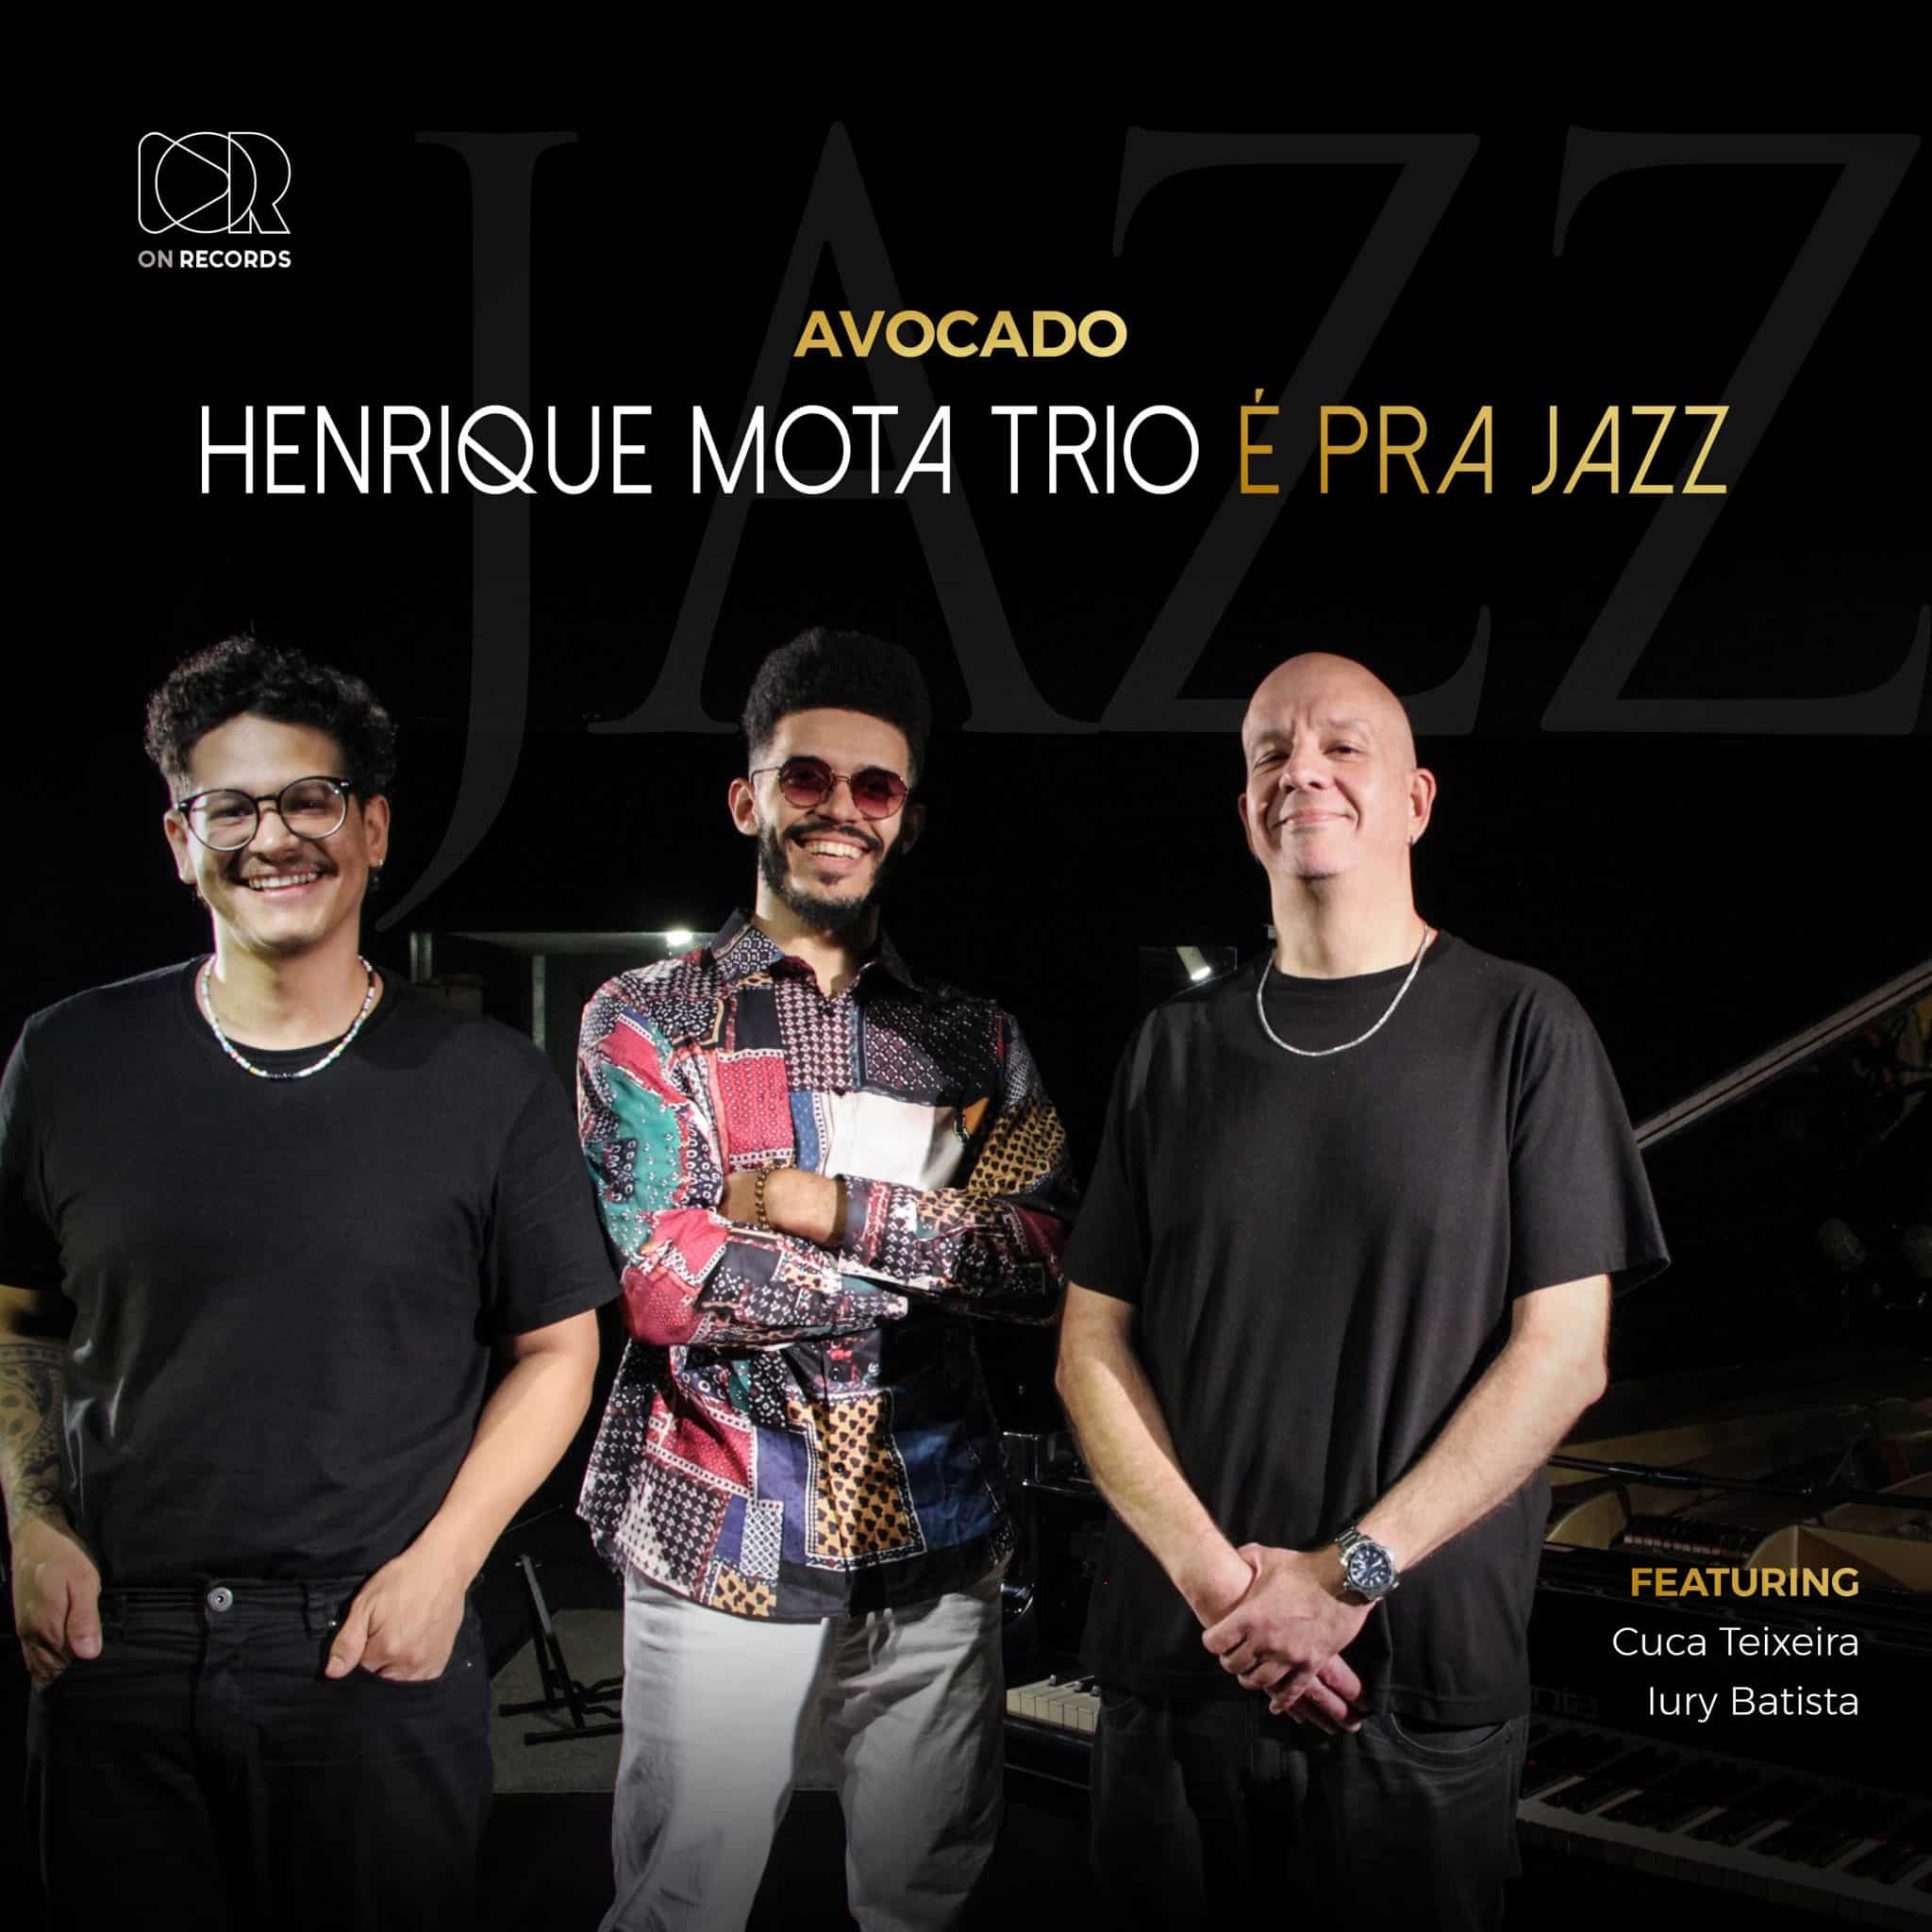 revistaprosaversoearte.com - Henrique Mota Trio lança single 'Avocado'